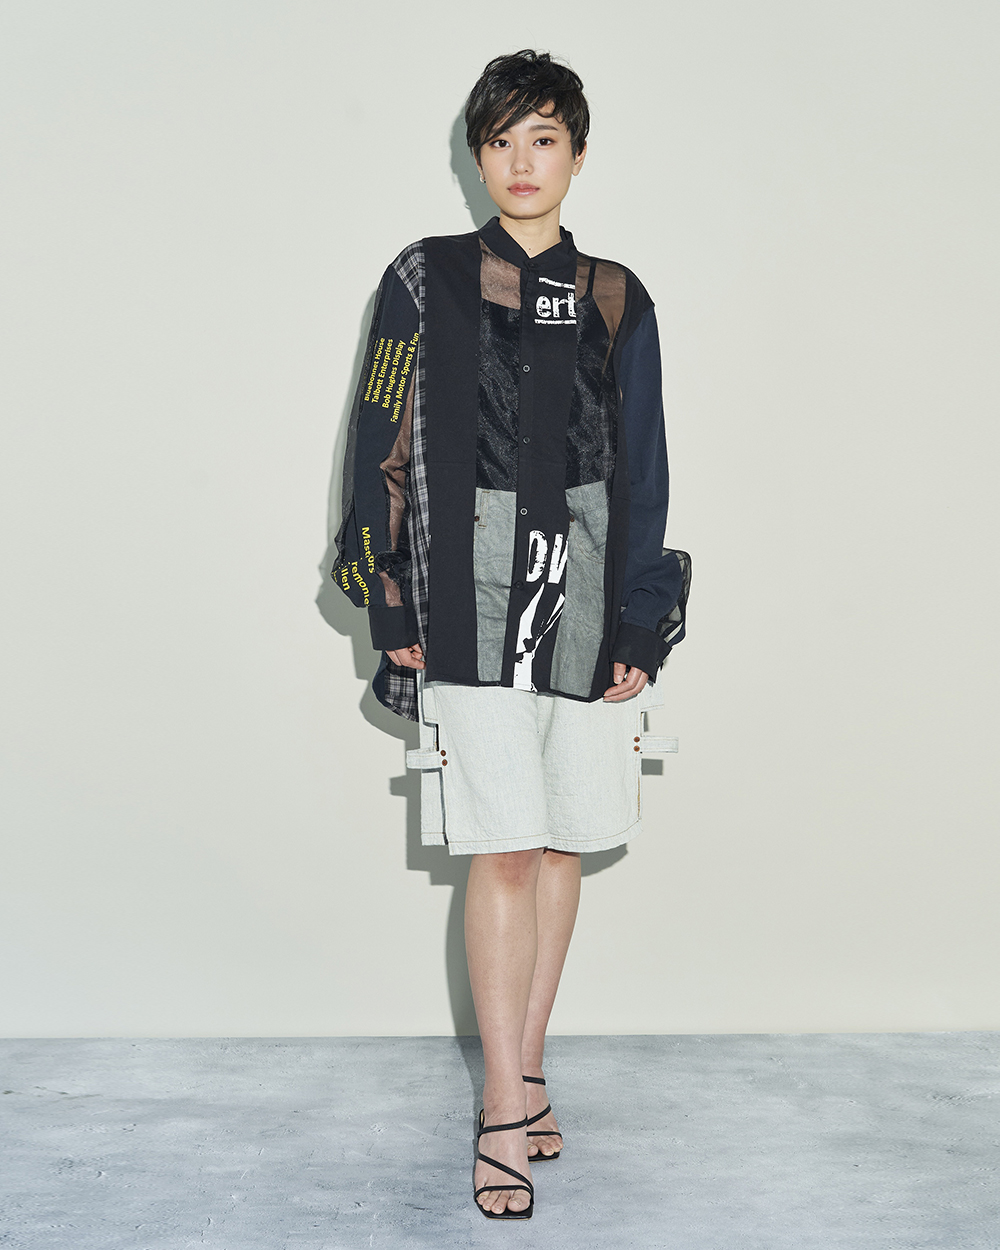 コトハヨコザワのデニムショーツとスリューのリメイクブラウスを着用した女性モデル